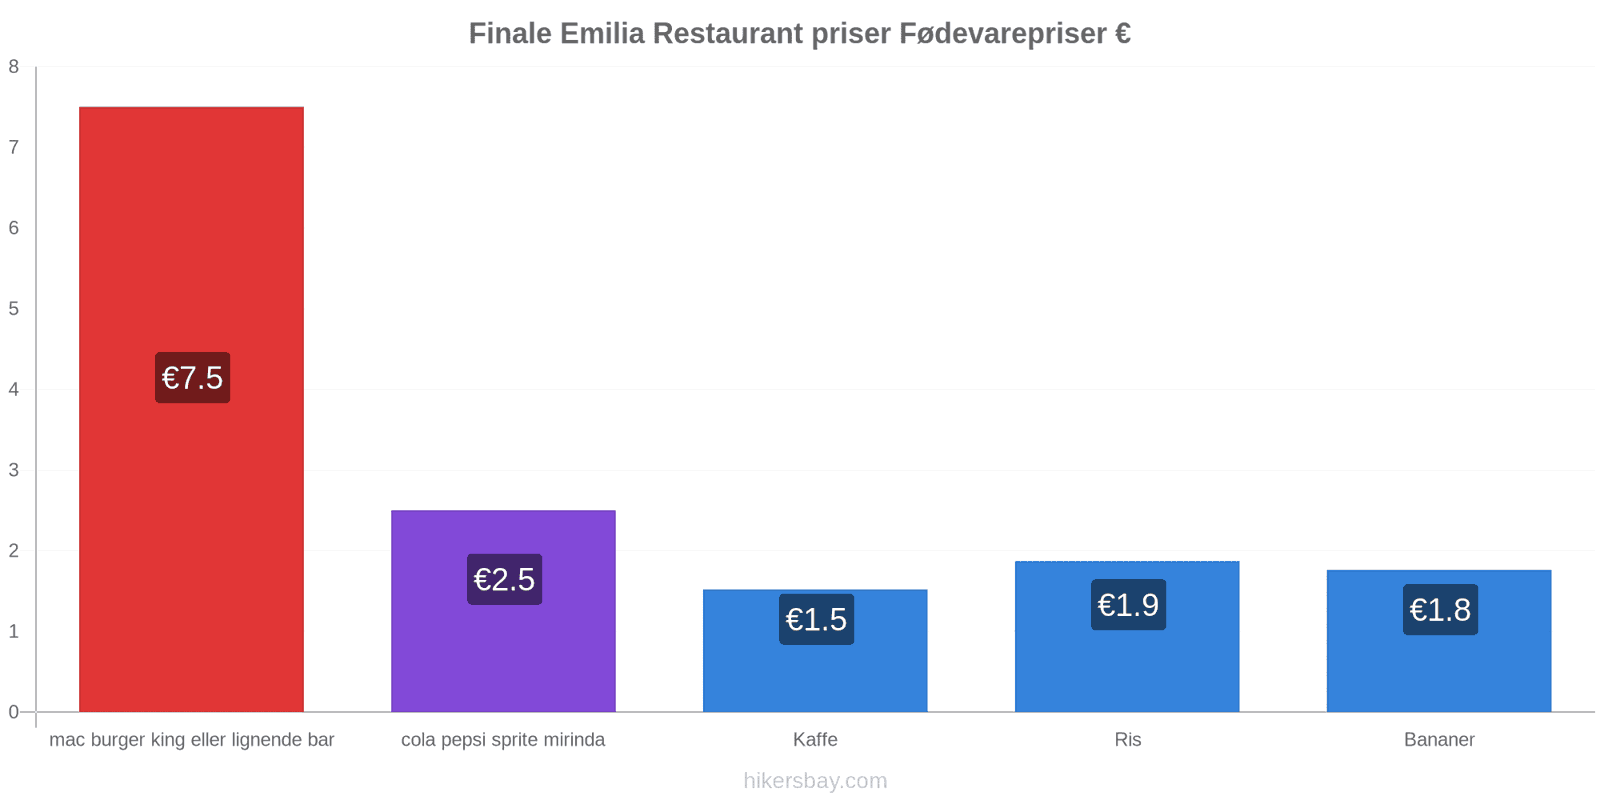 Finale Emilia prisændringer hikersbay.com